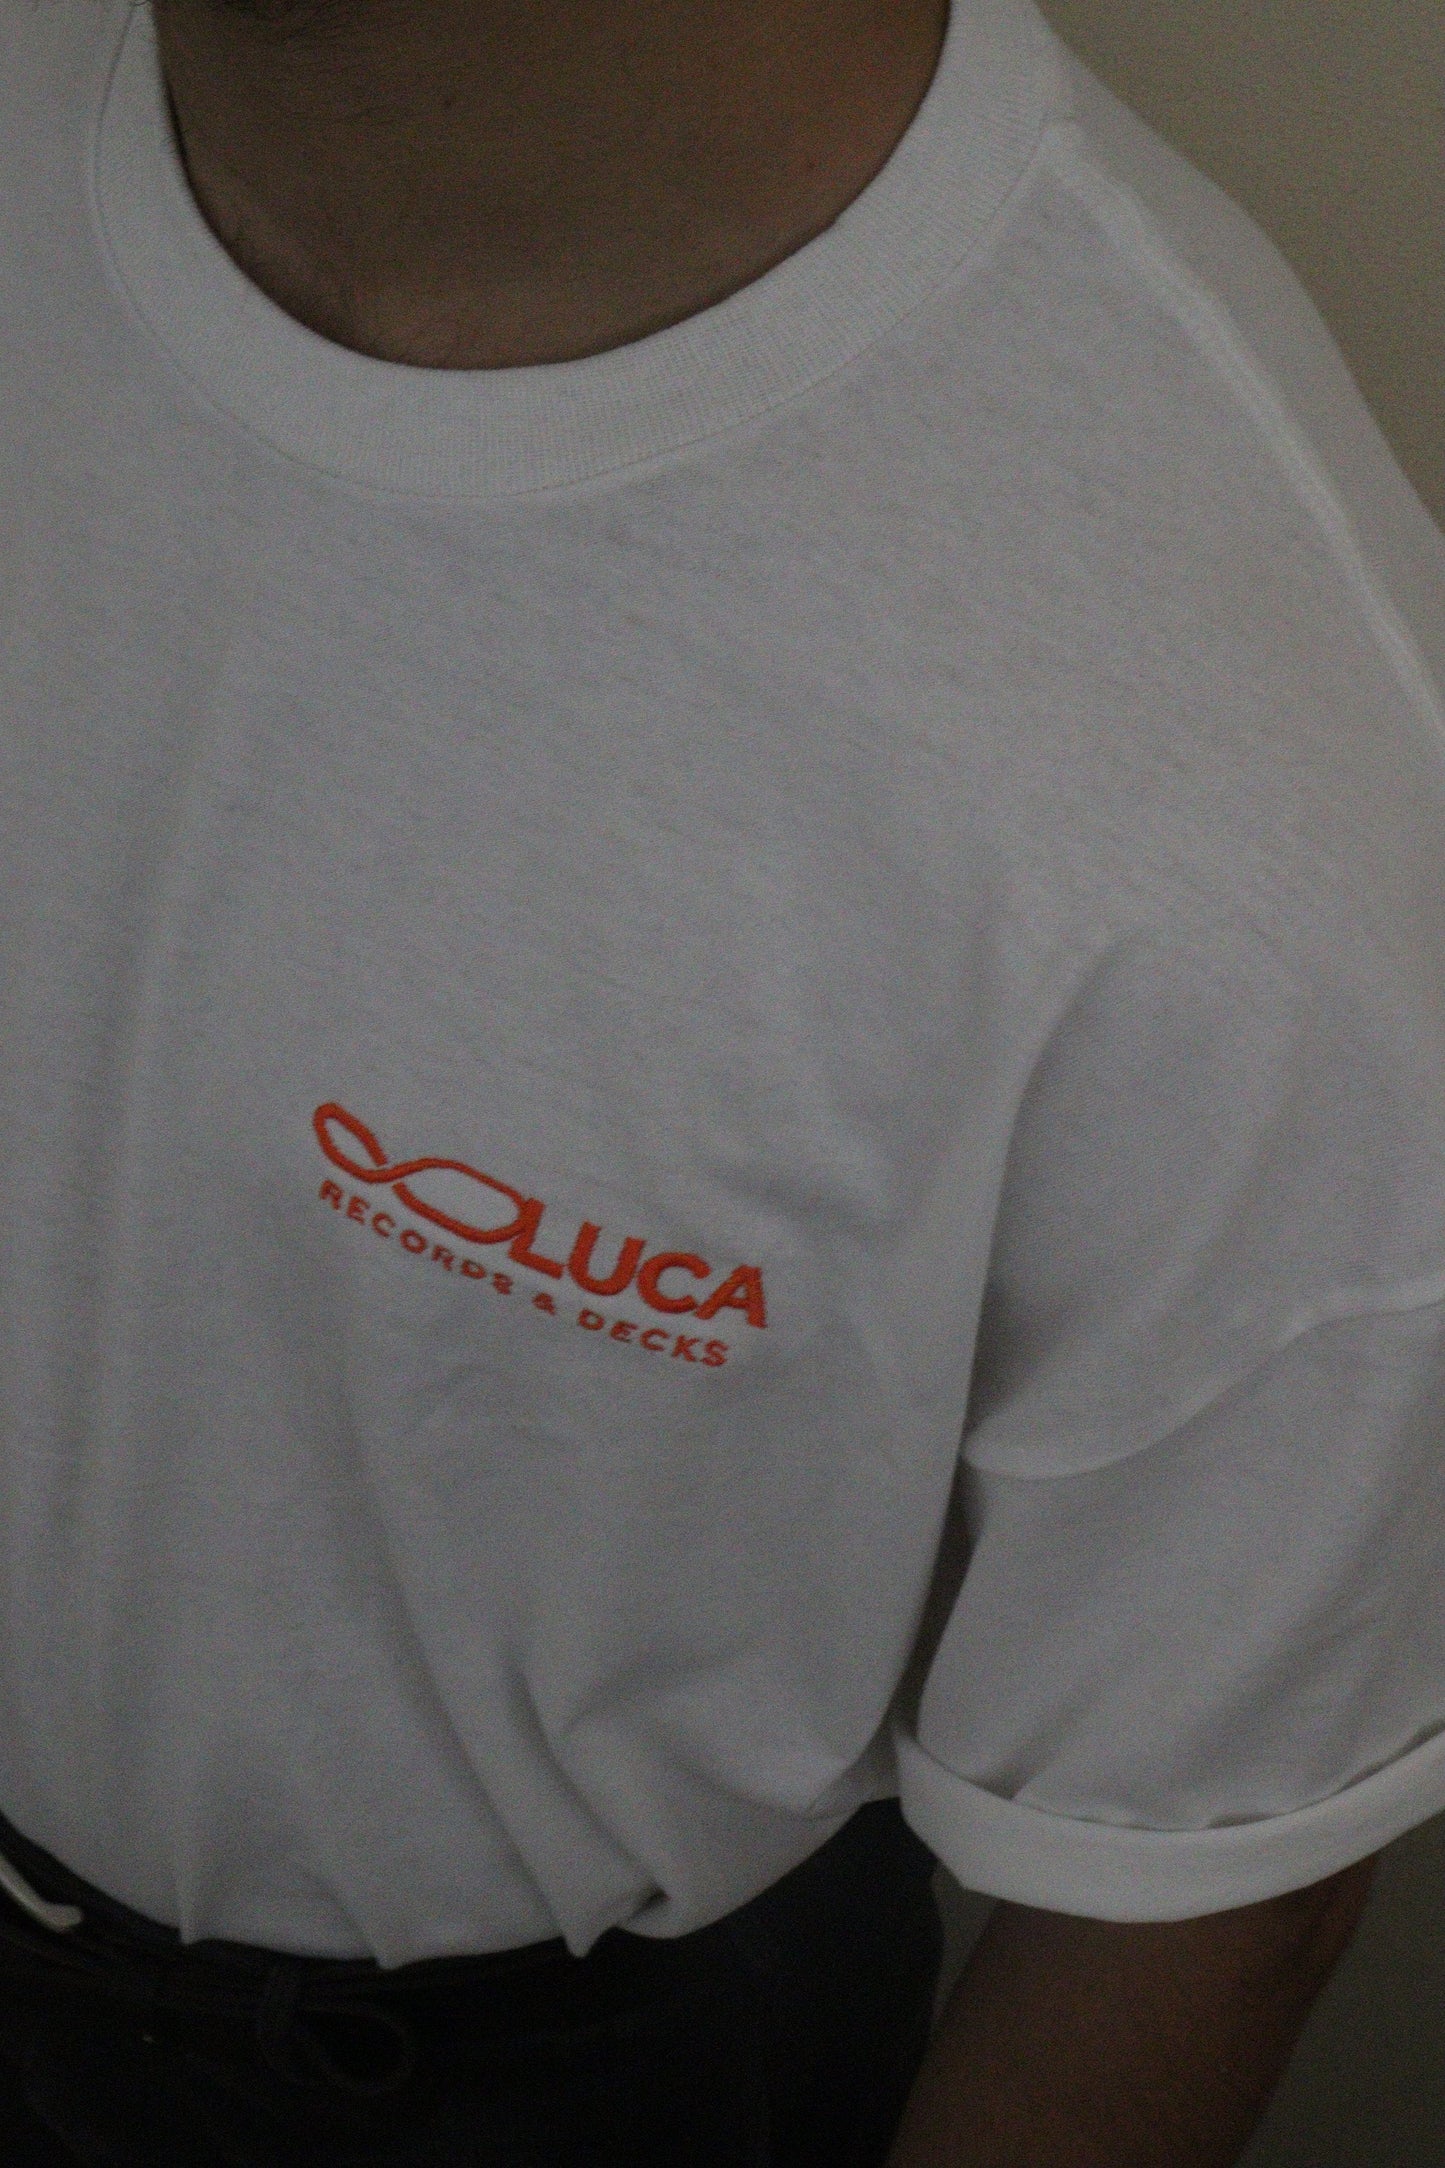 Luca Records & Decks Tee White & Orange (Embroidered) Size XL